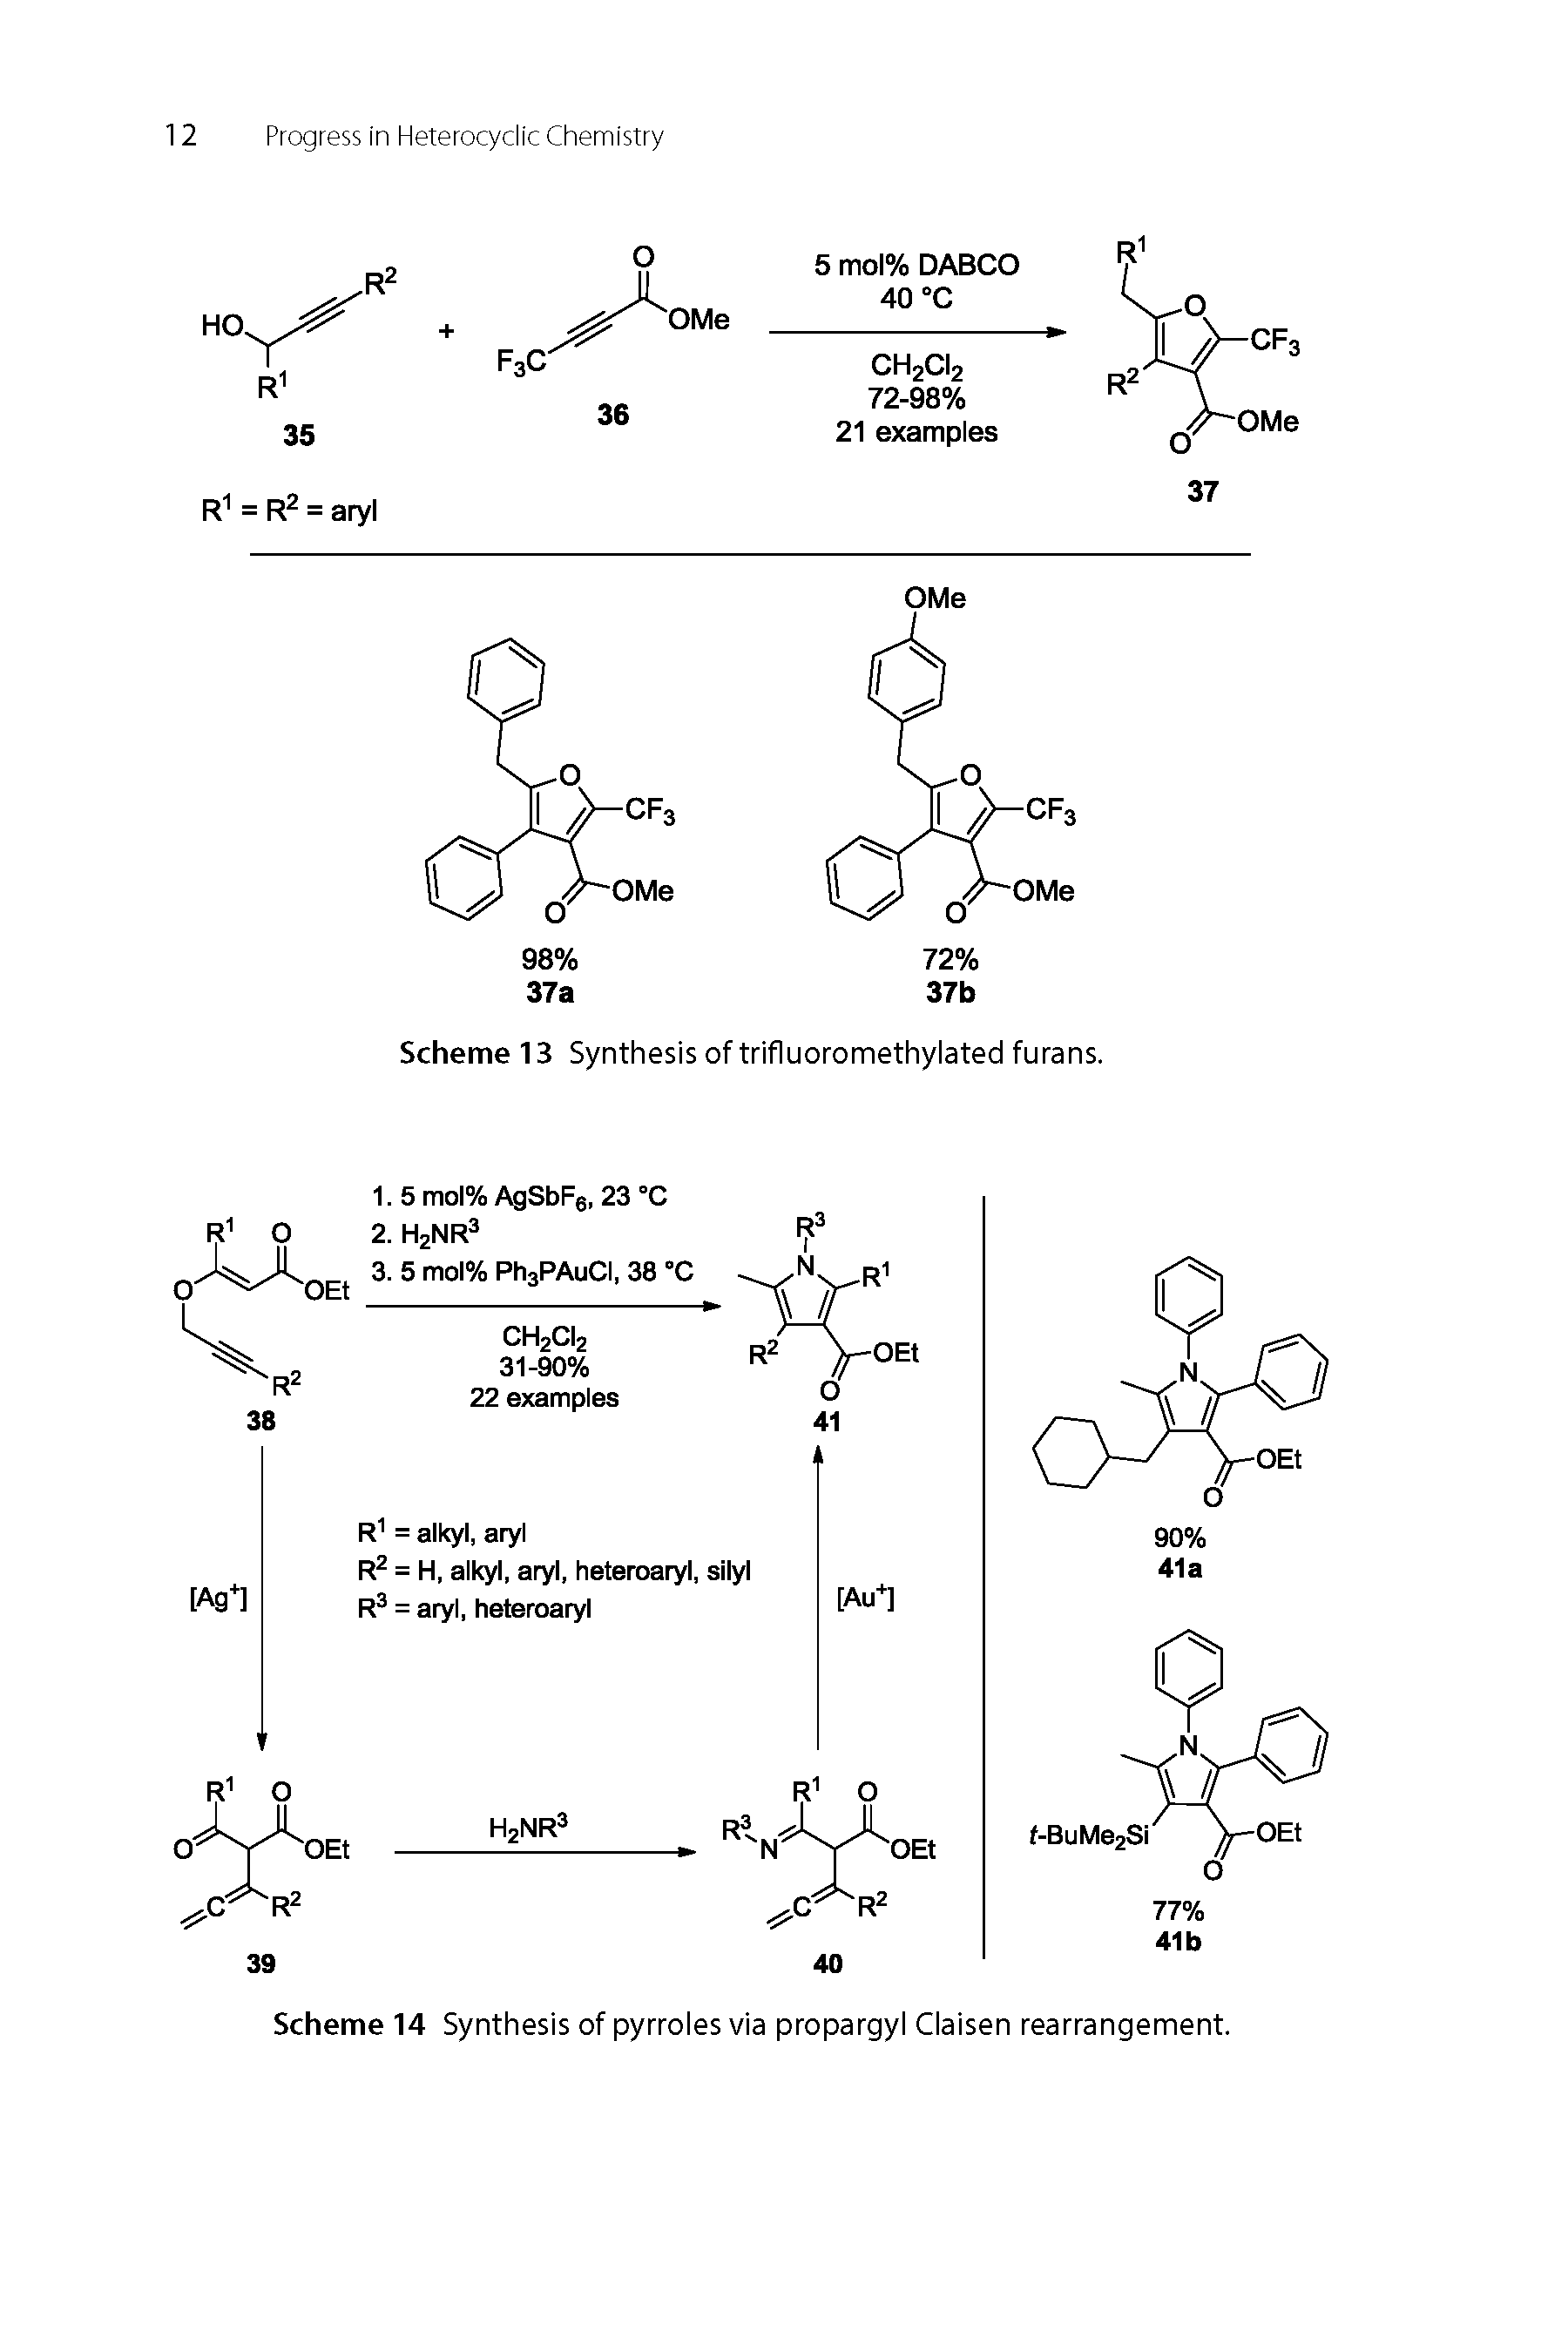 Scheme 14 Synthesis of pyrroles via propargyl Claisen rearrangement.